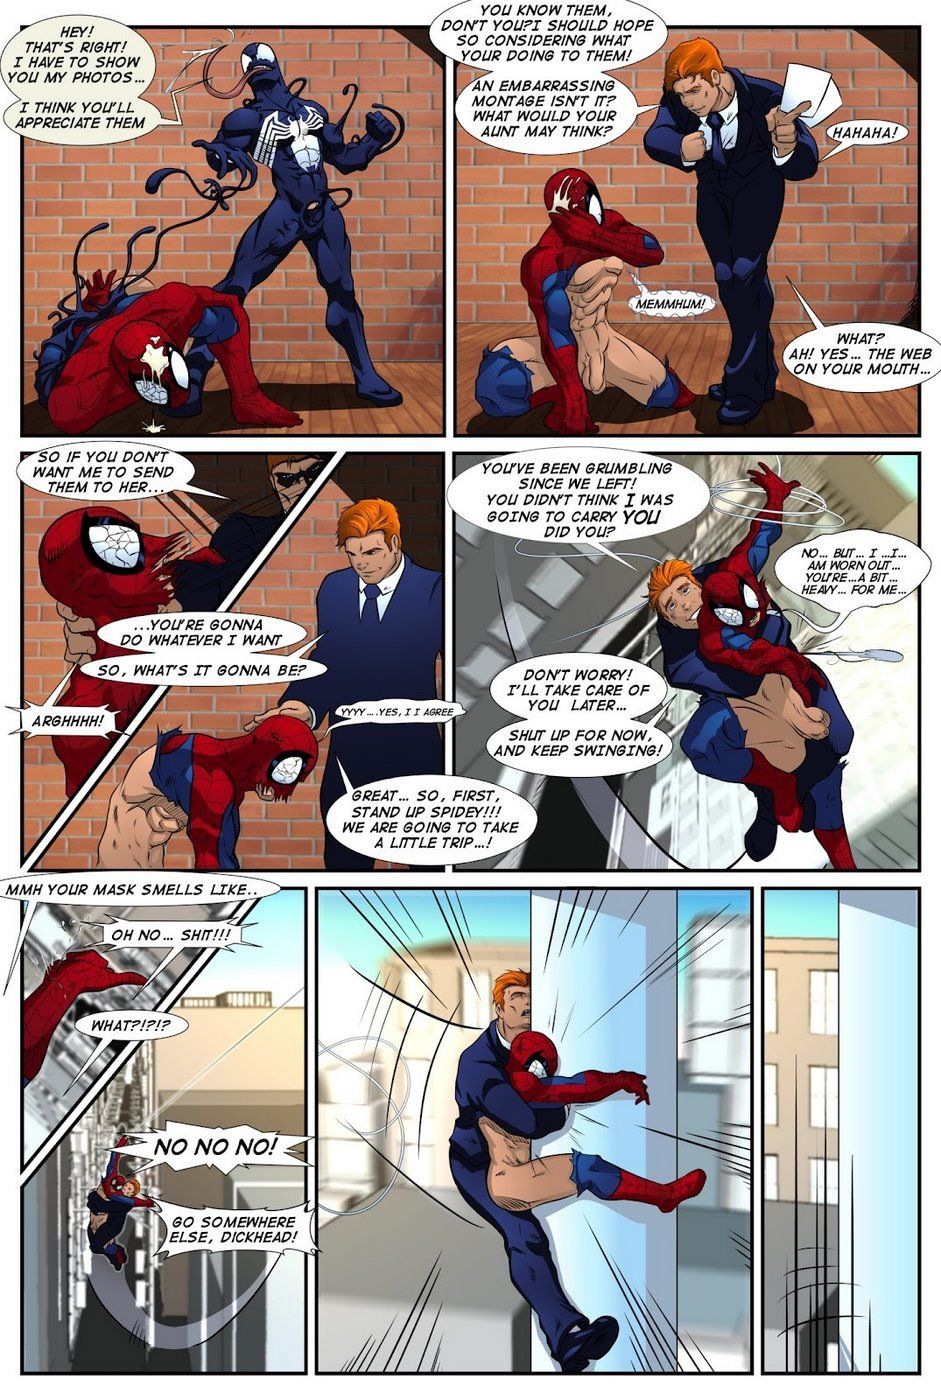 Shooters (Spider-Man Venom) page 15